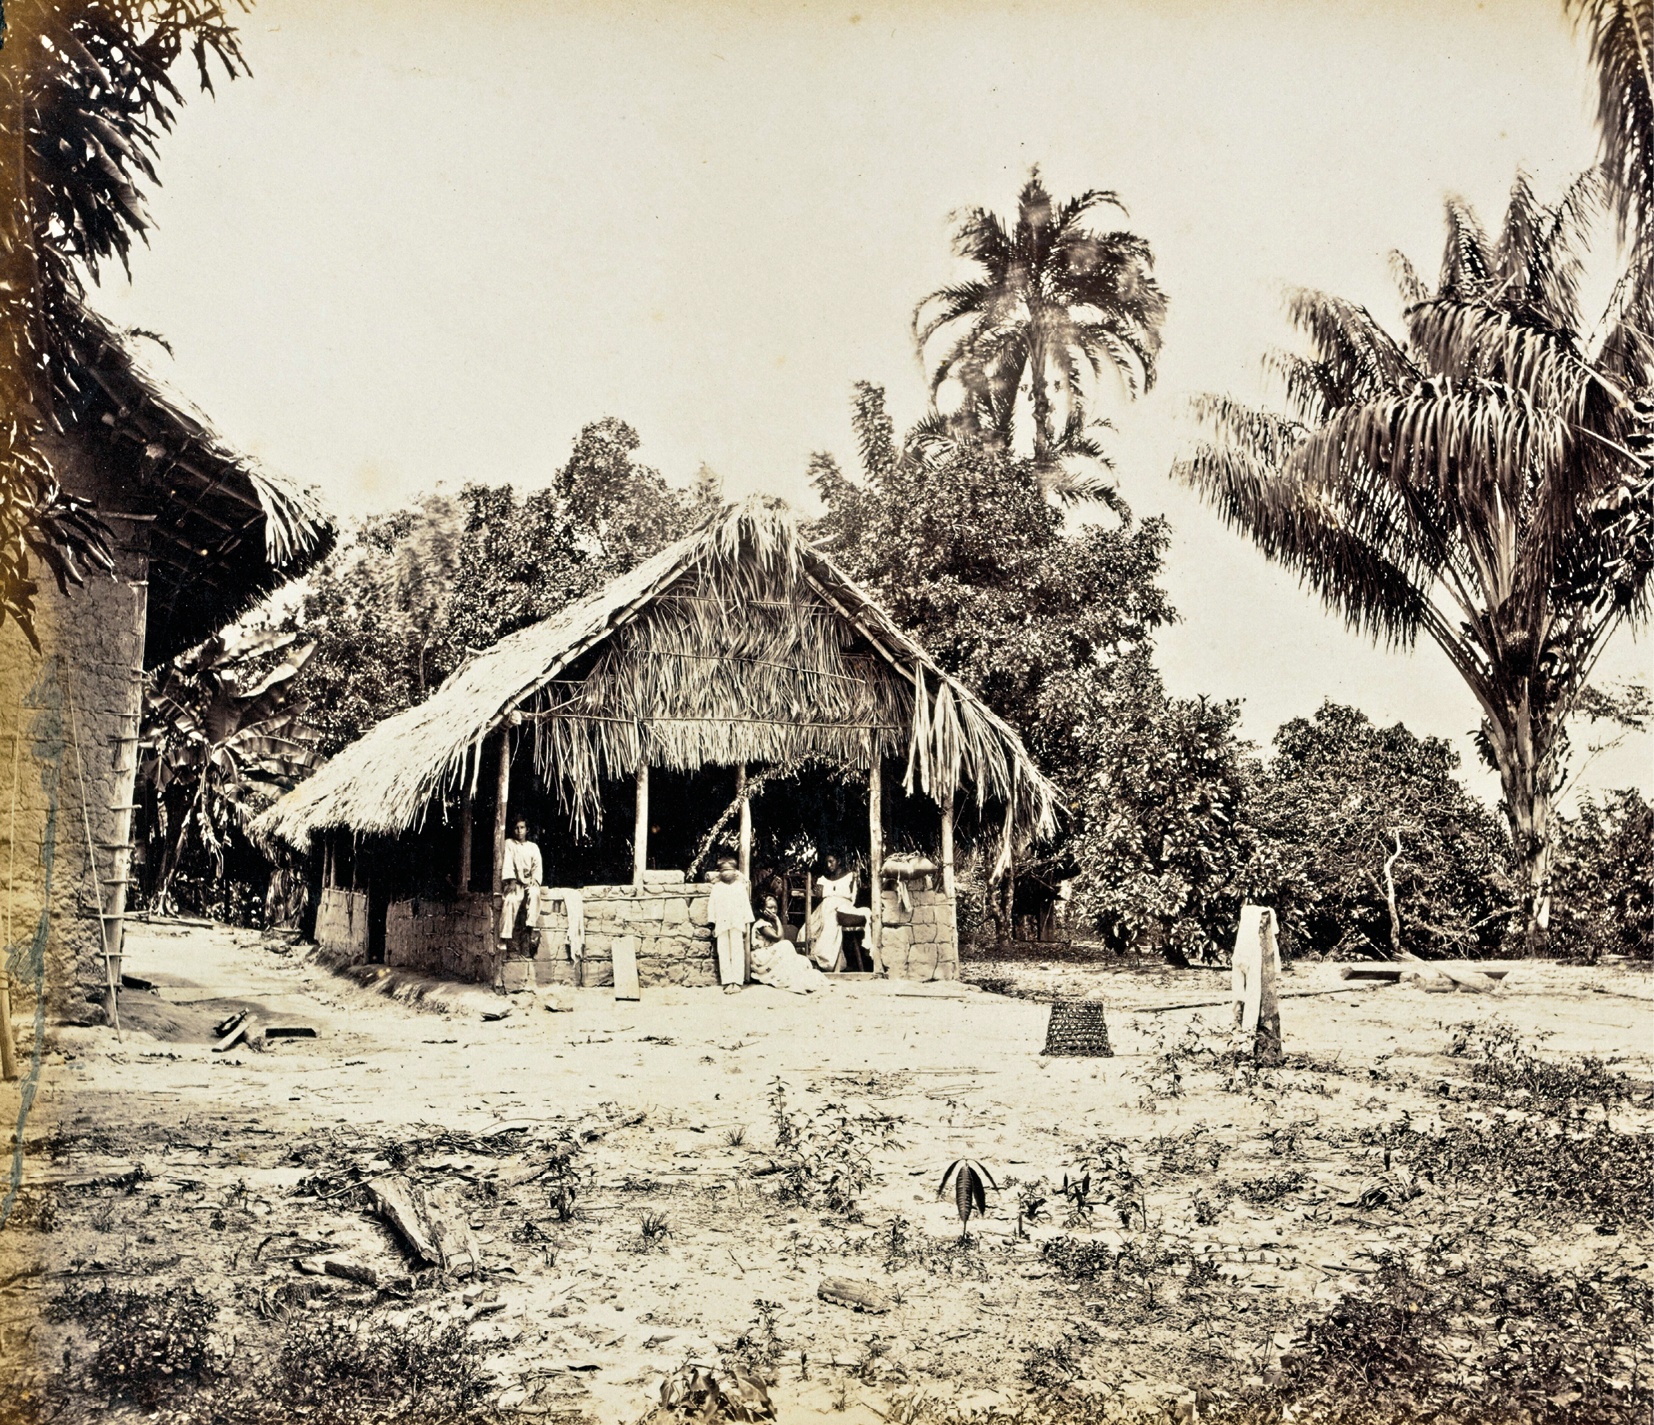 Fotografia em preto e branco. Uma cabana feita de folhagens, estacas e barro, em um terreno plano, com alguns arbustos. Ao fundo, árvores e palmeiras.